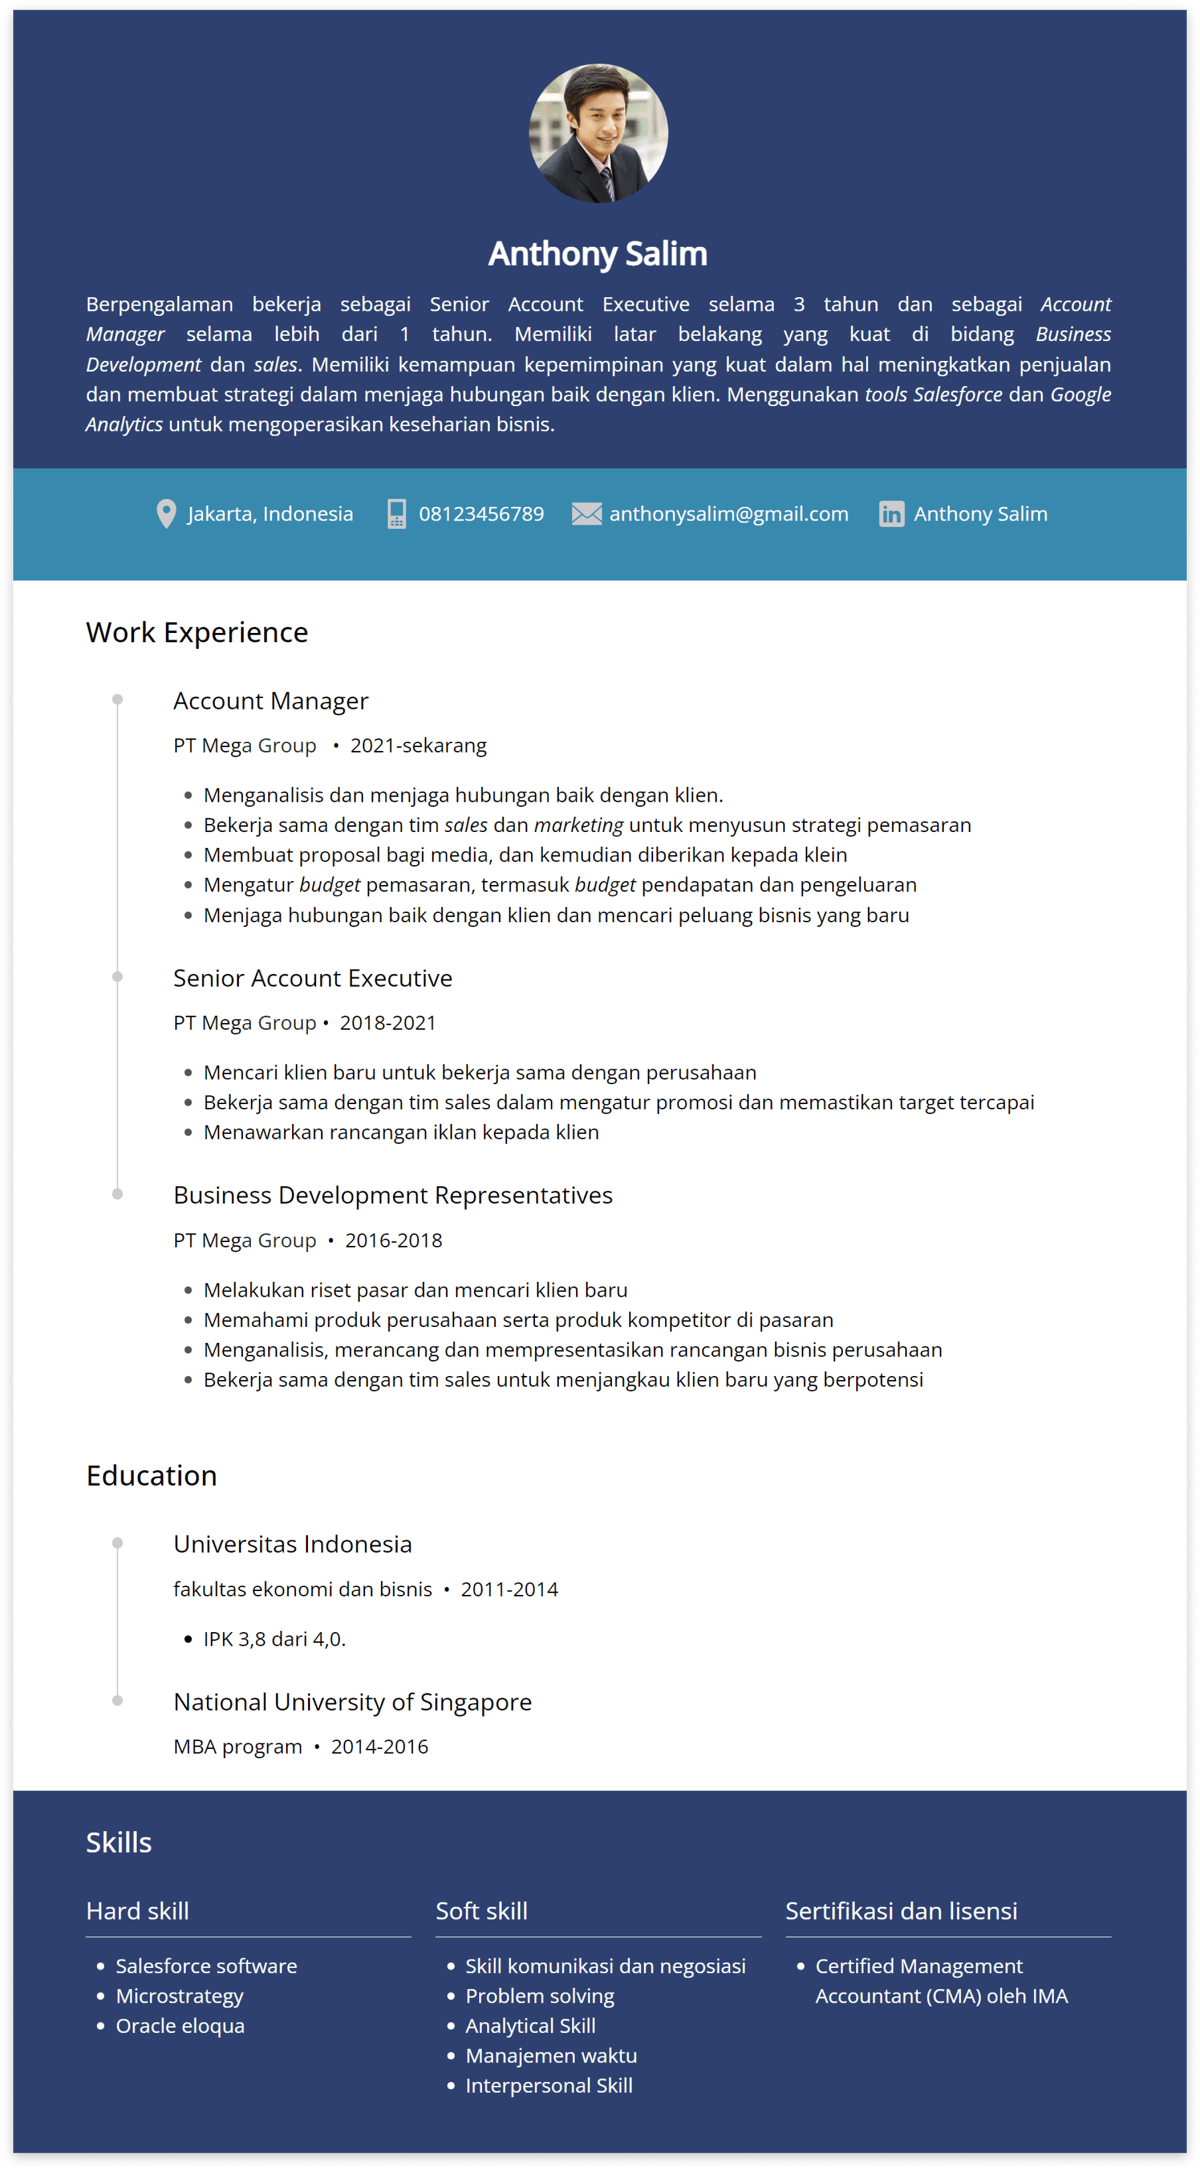 Contoh CV Account Manager --- Dibuat di CakeResume